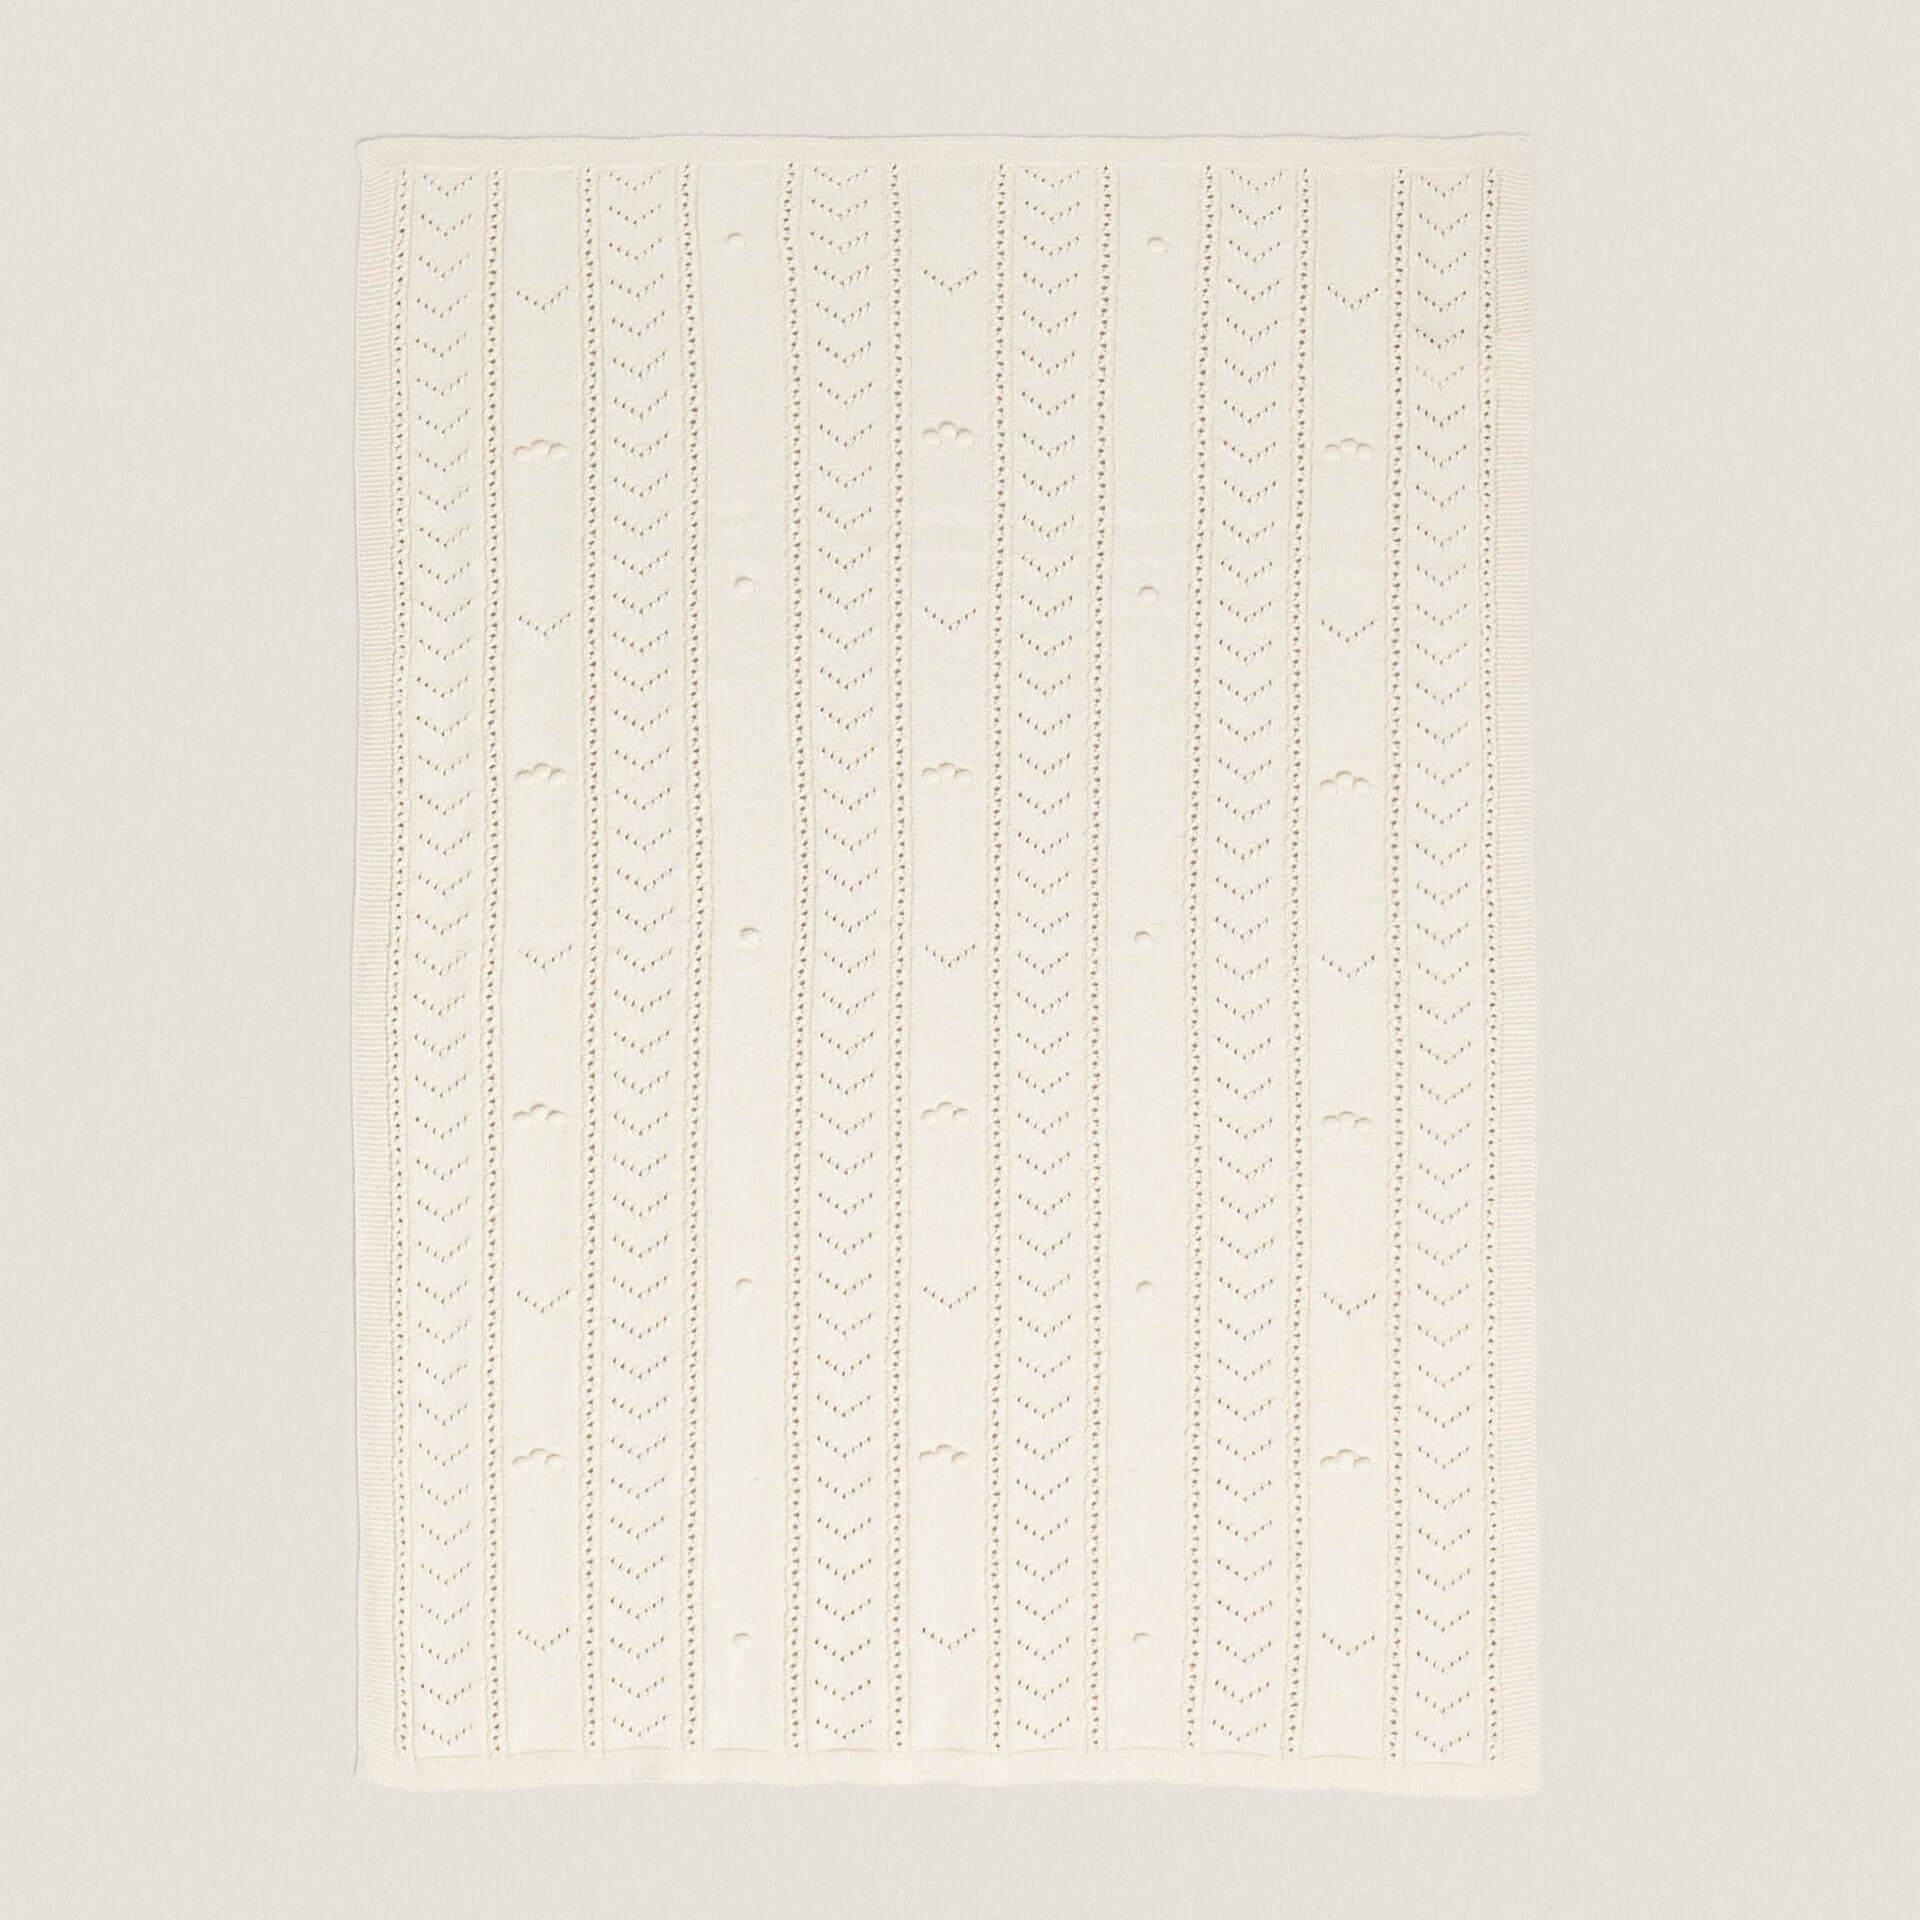 Детское одеяло Zara Home Open-Knit, белый муслиновое клетчатое детское хлопковое одеяло 120x120 из бамбука весна лето осень одеяло для новорожденных от 0 до 36 месяцев одеяла и пеленки